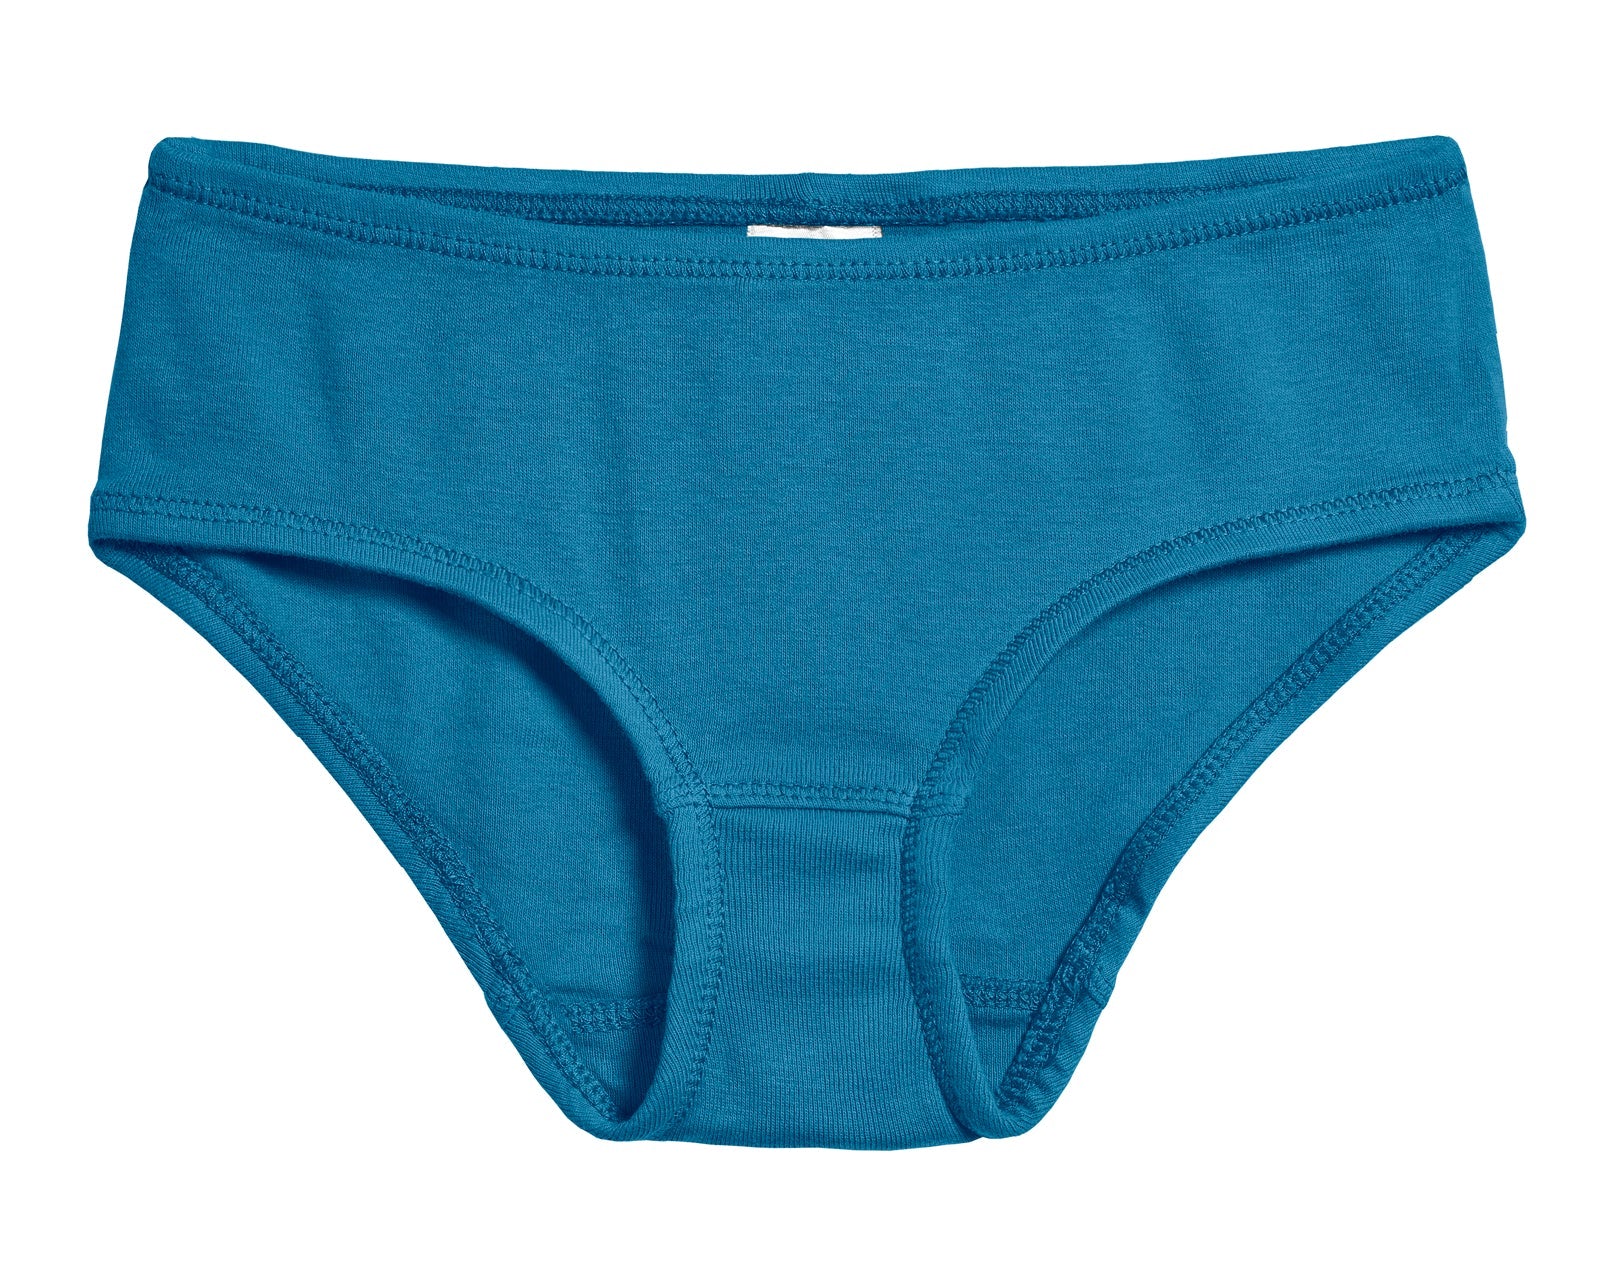 Girls Organic Underwear | Girls Briefs | City Threads - City Threads USA